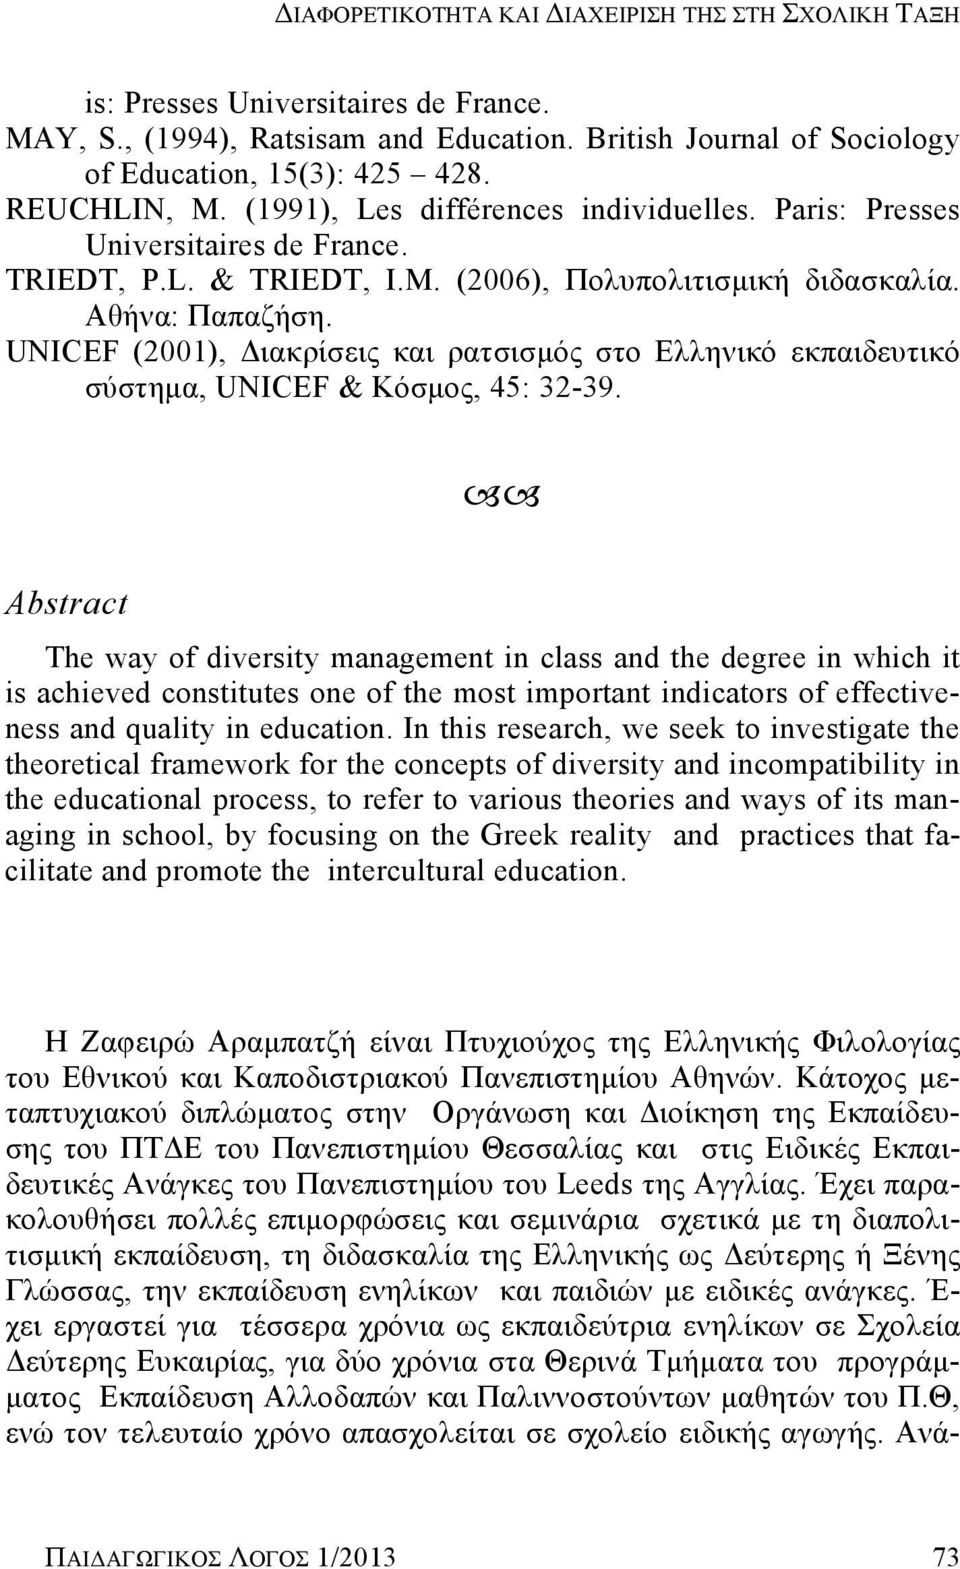 UNICEF (2001), Διακρίσεις και ρατσισμός στο Ελληνικό εκπαιδευτικό σύστημα, UNICEF & Κόσμος, 45: 32-39.